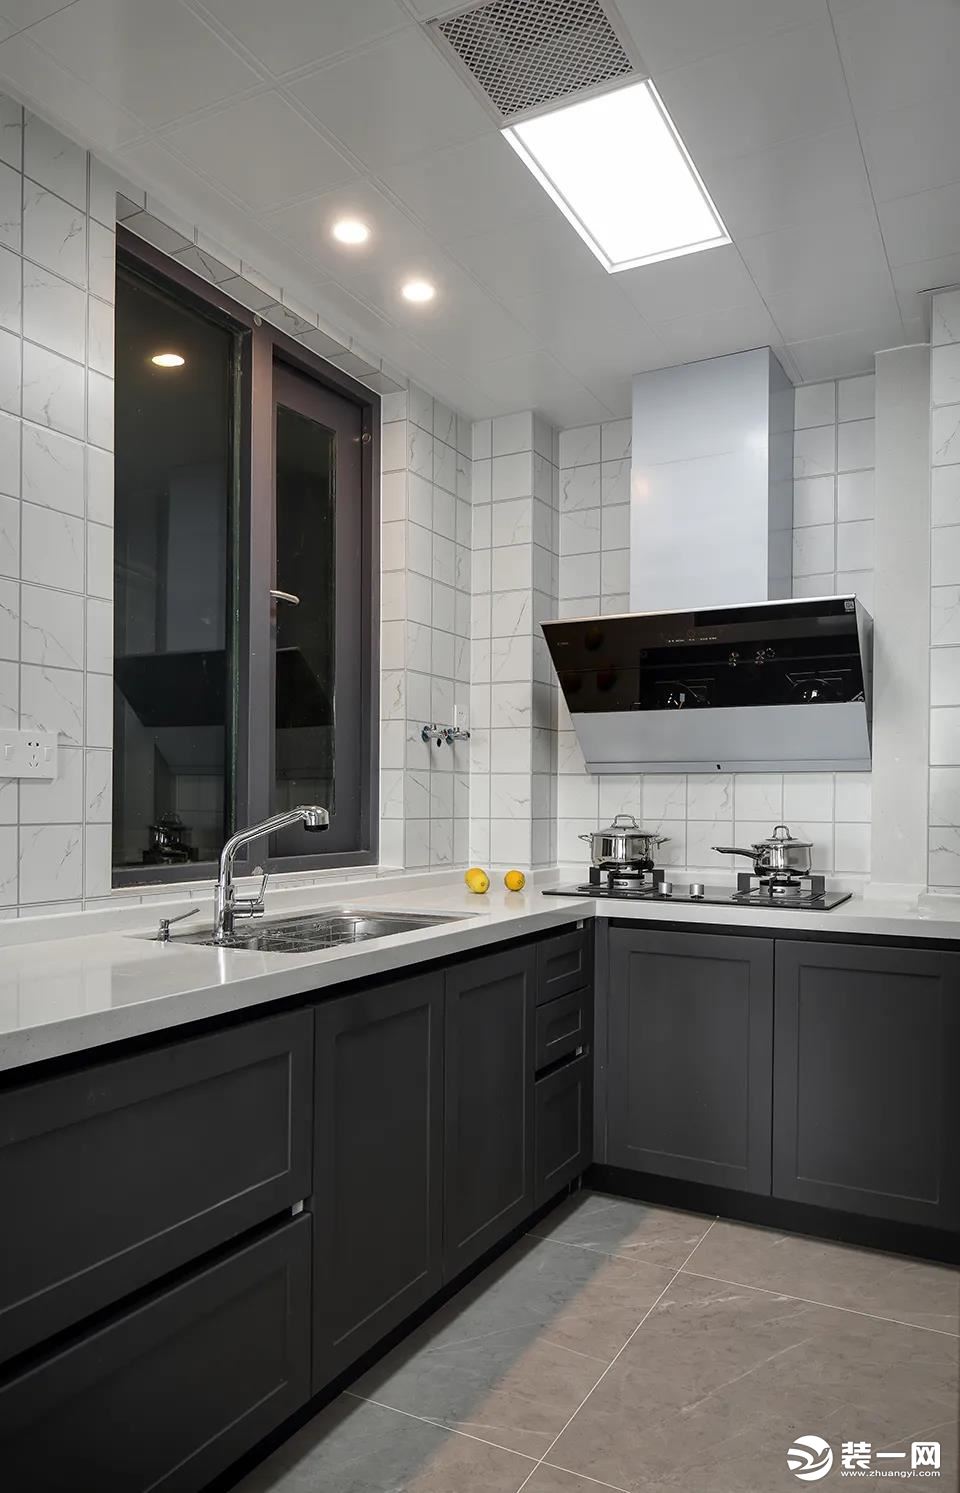 厨房在灰色地面砖的基础，墙面则是小白砖，而深灰色的橱柜设计，搭配在这个现代大方的厨房空间里，也是显得